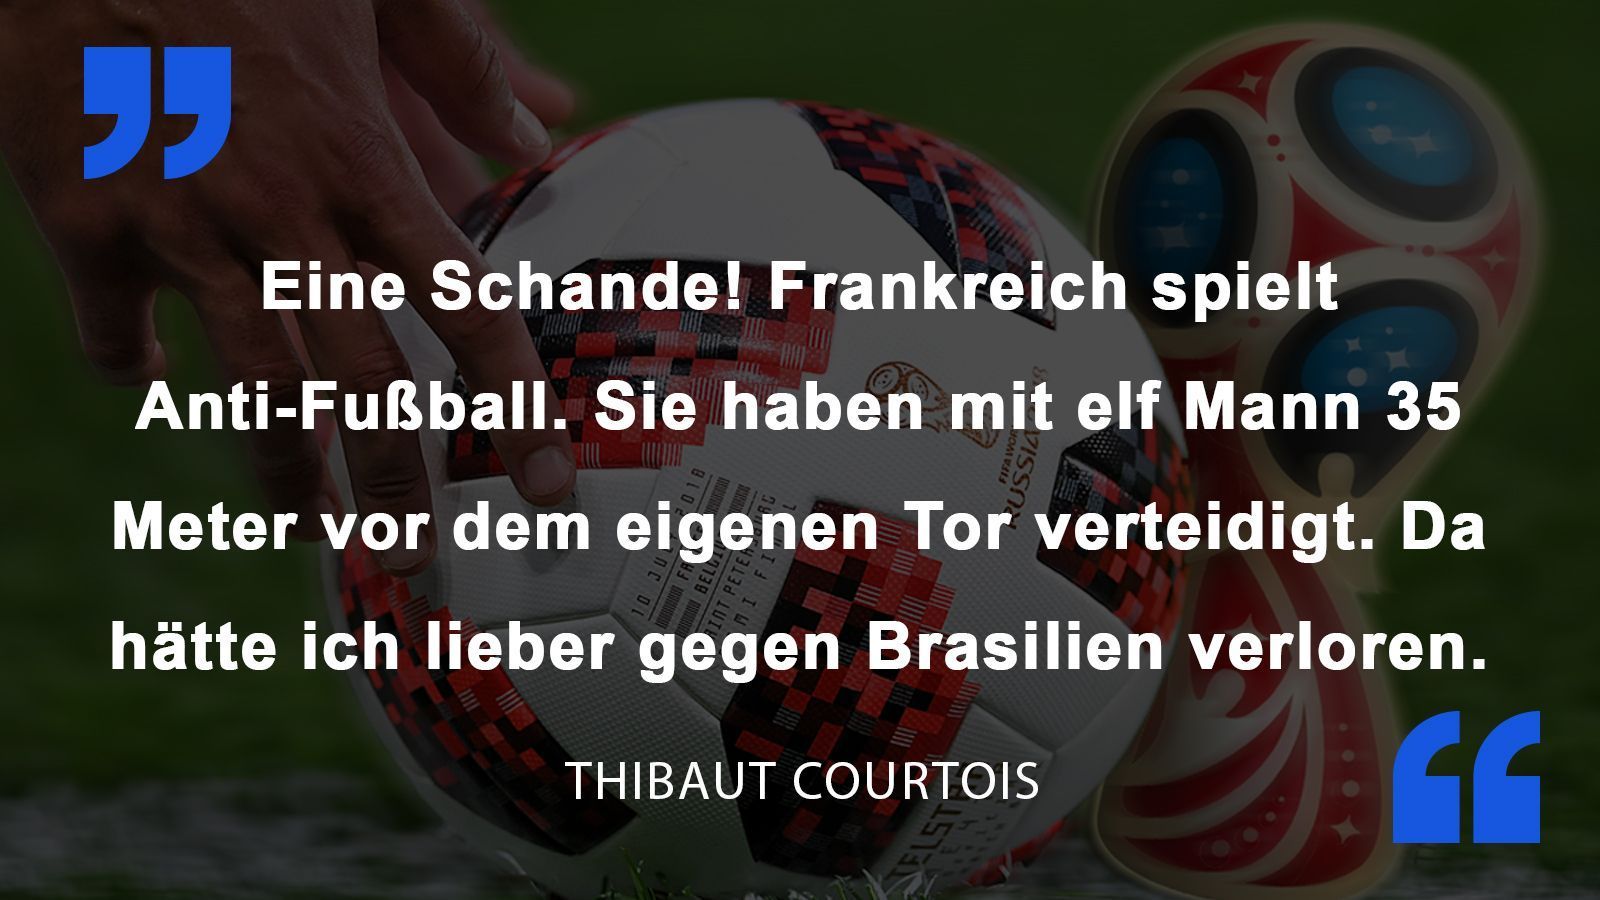 
                <strong>Thibaut Courtois</strong><br>
                Thibaut Courtois nach der Halbfinal-Pleite gegen Frankreich. Belgien kam im Viertelfinale knapp gegen Brasilien weiter.
              